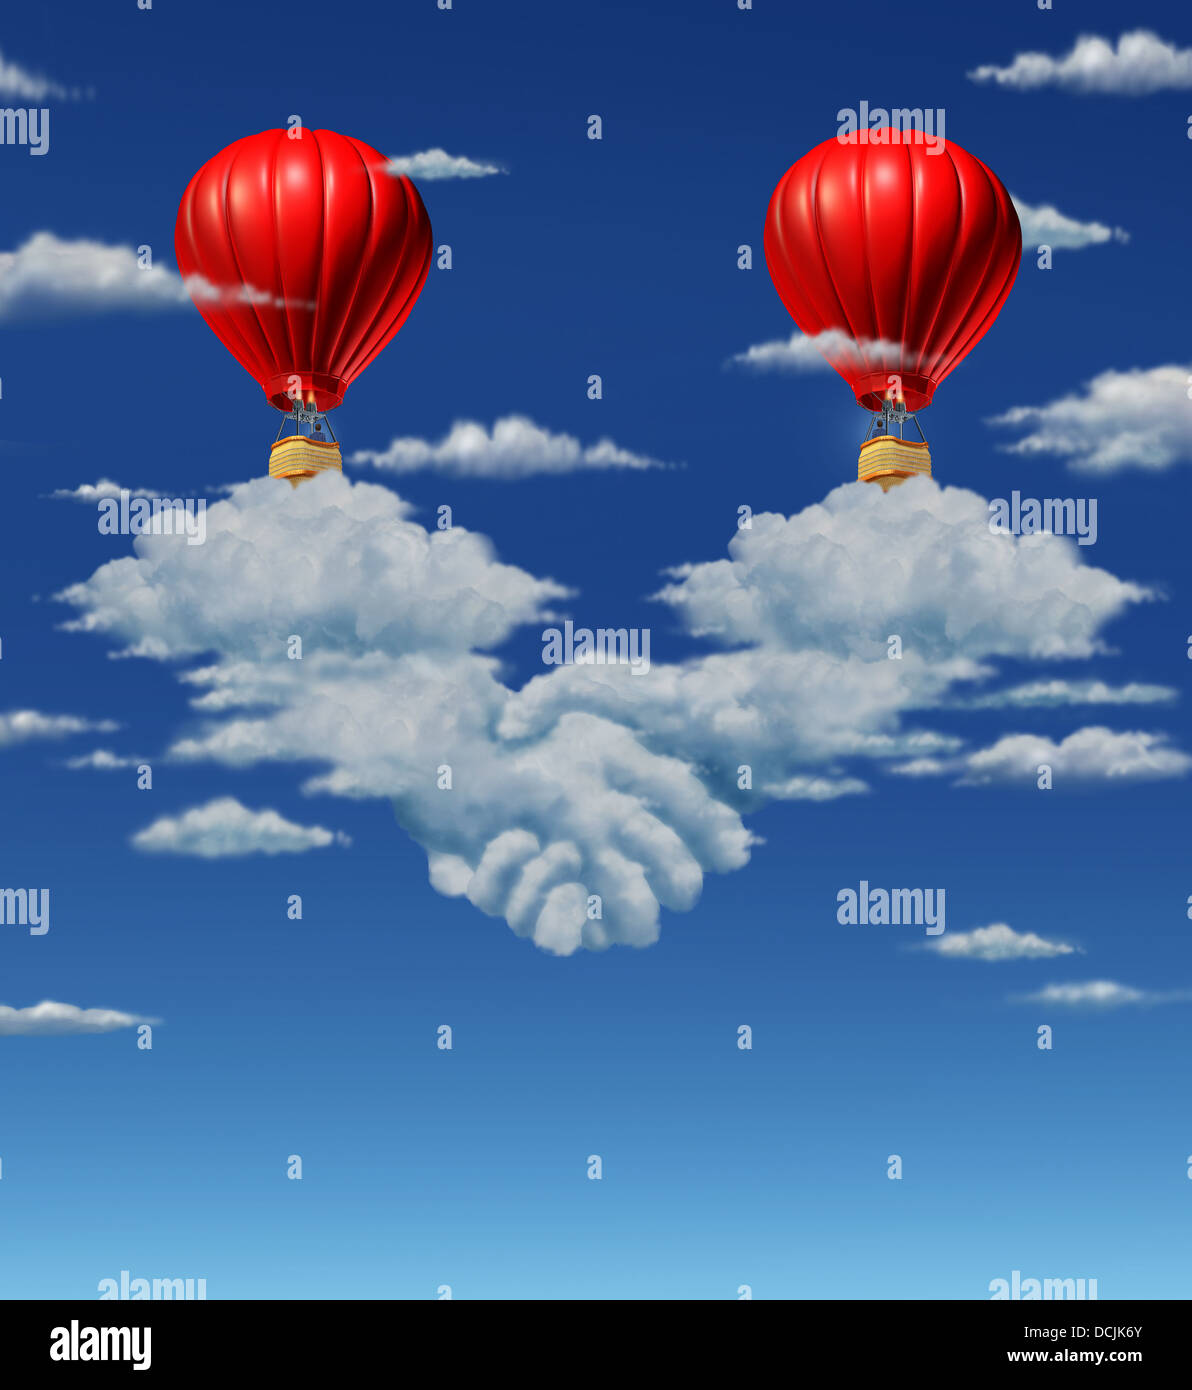 High Stakes accordo concetto di business con due red i palloni ad aria calda con gli imprenditori provenienti insieme e di volare al di sopra di un gruppo di nuvole che hanno la forma di una mano o di sincronizzazione come un simbolo finanziario simbolo di grandi contratti. Foto Stock